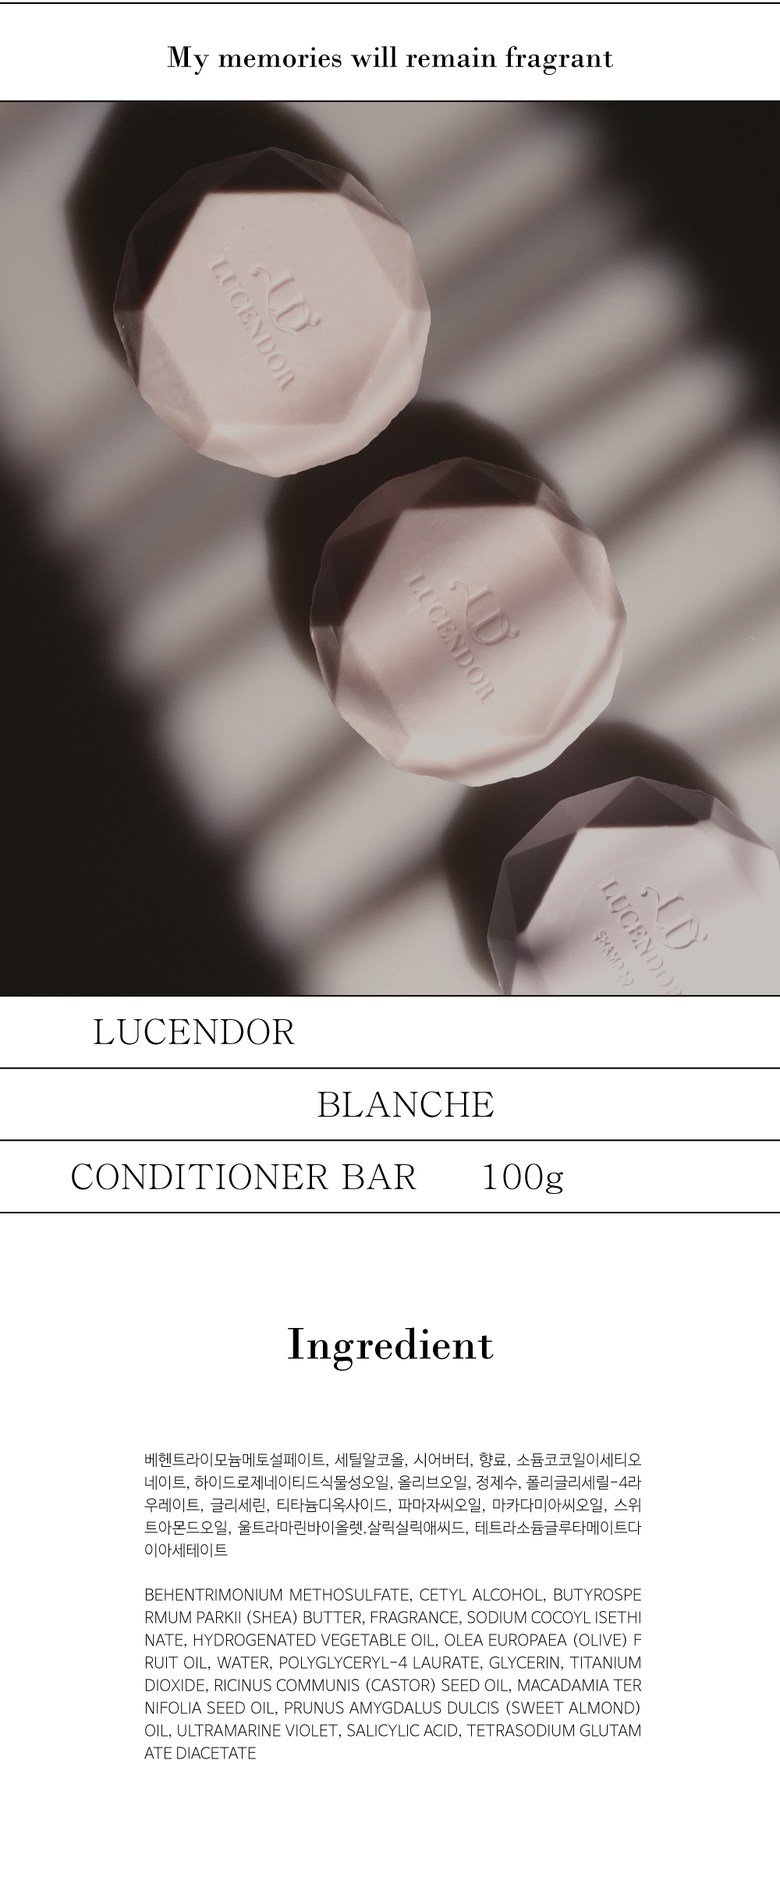 Lucendor Shampoo and Rinse Bar